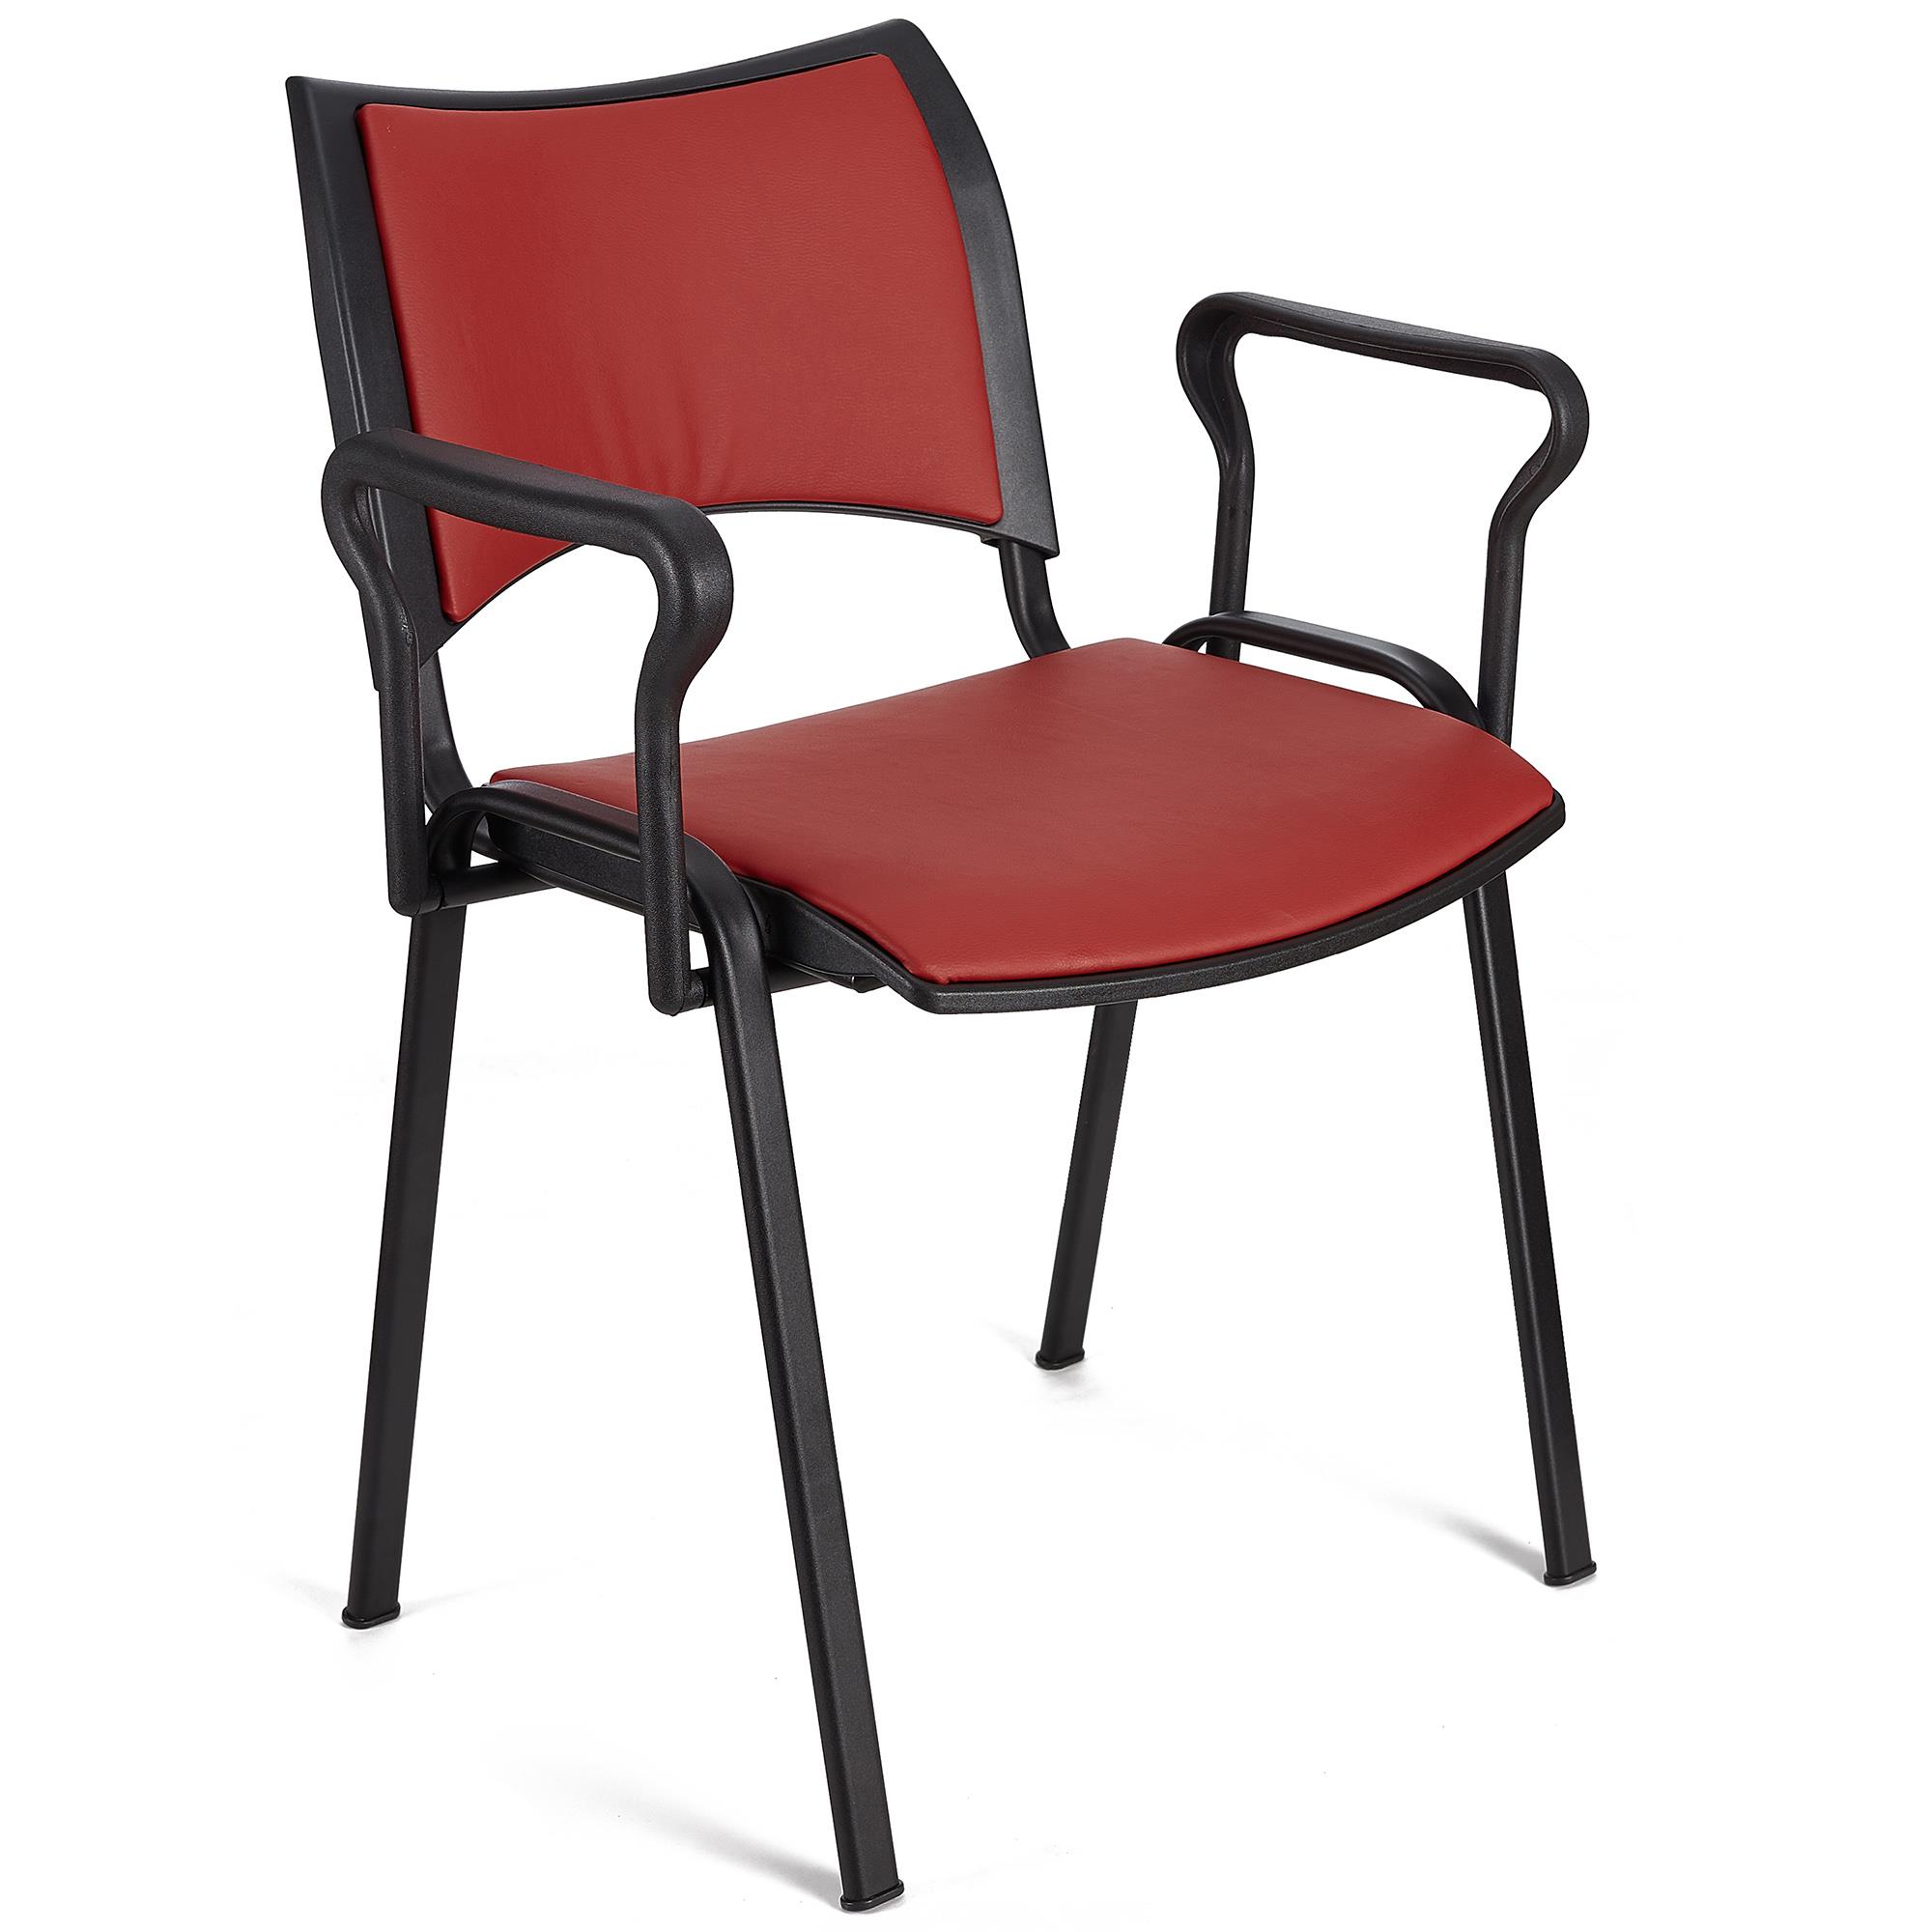 Cadeira de Visita ROMEL PELE COM BRAÇOS, Empilhável, Pernas Pretas, Vermelho